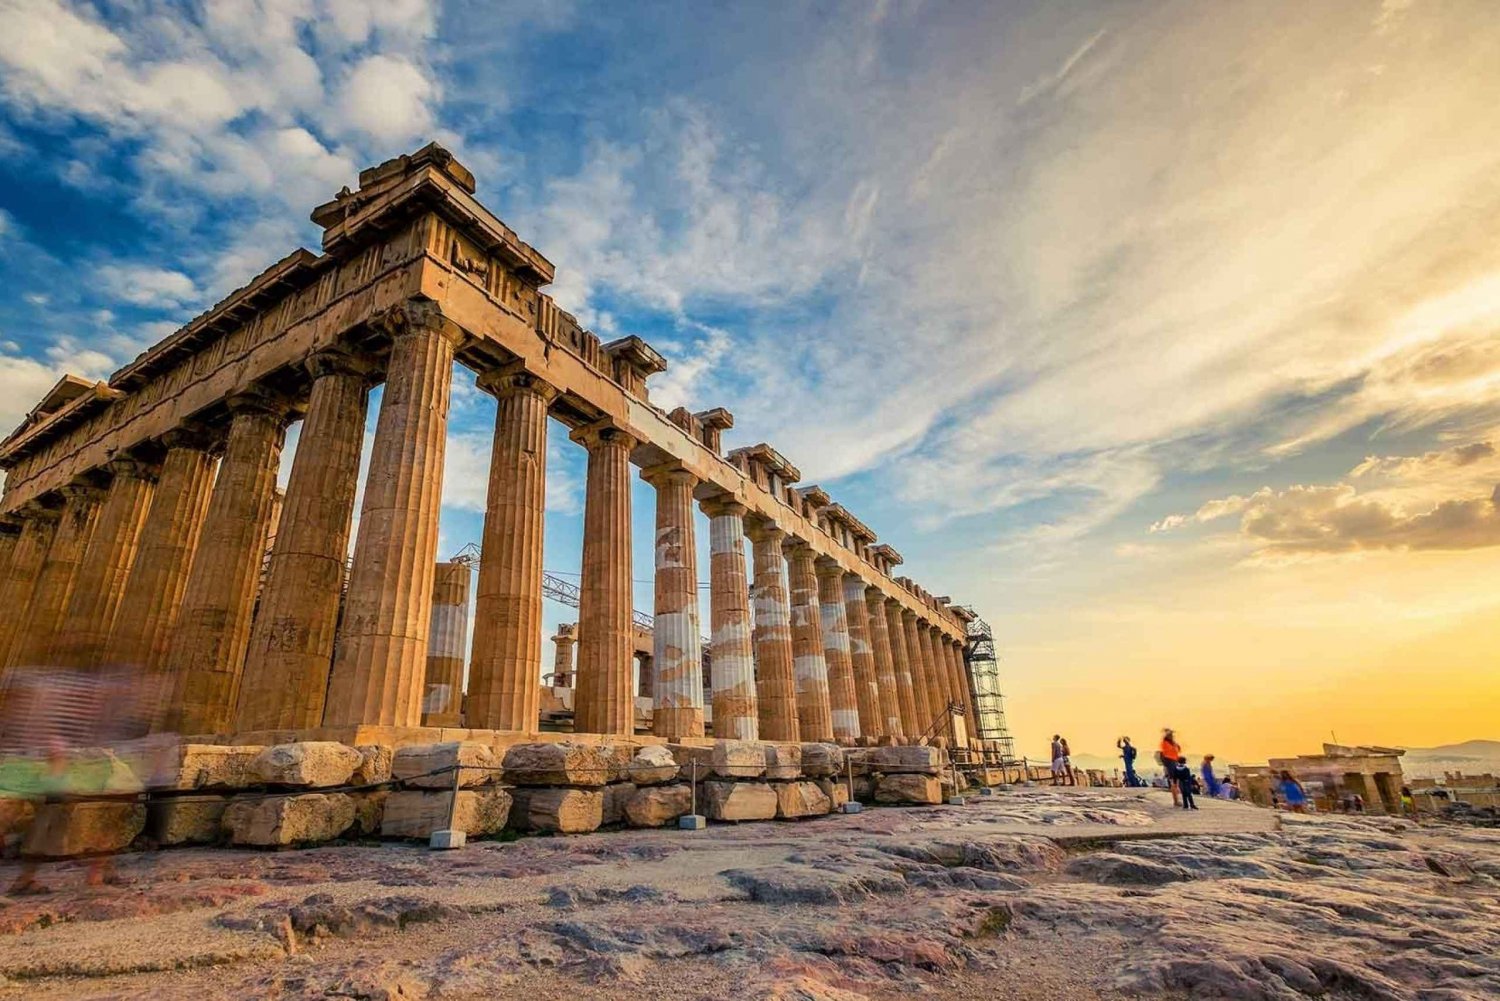 Atene: Tour panoramico con ingresso all'Acropoli con salta la fila